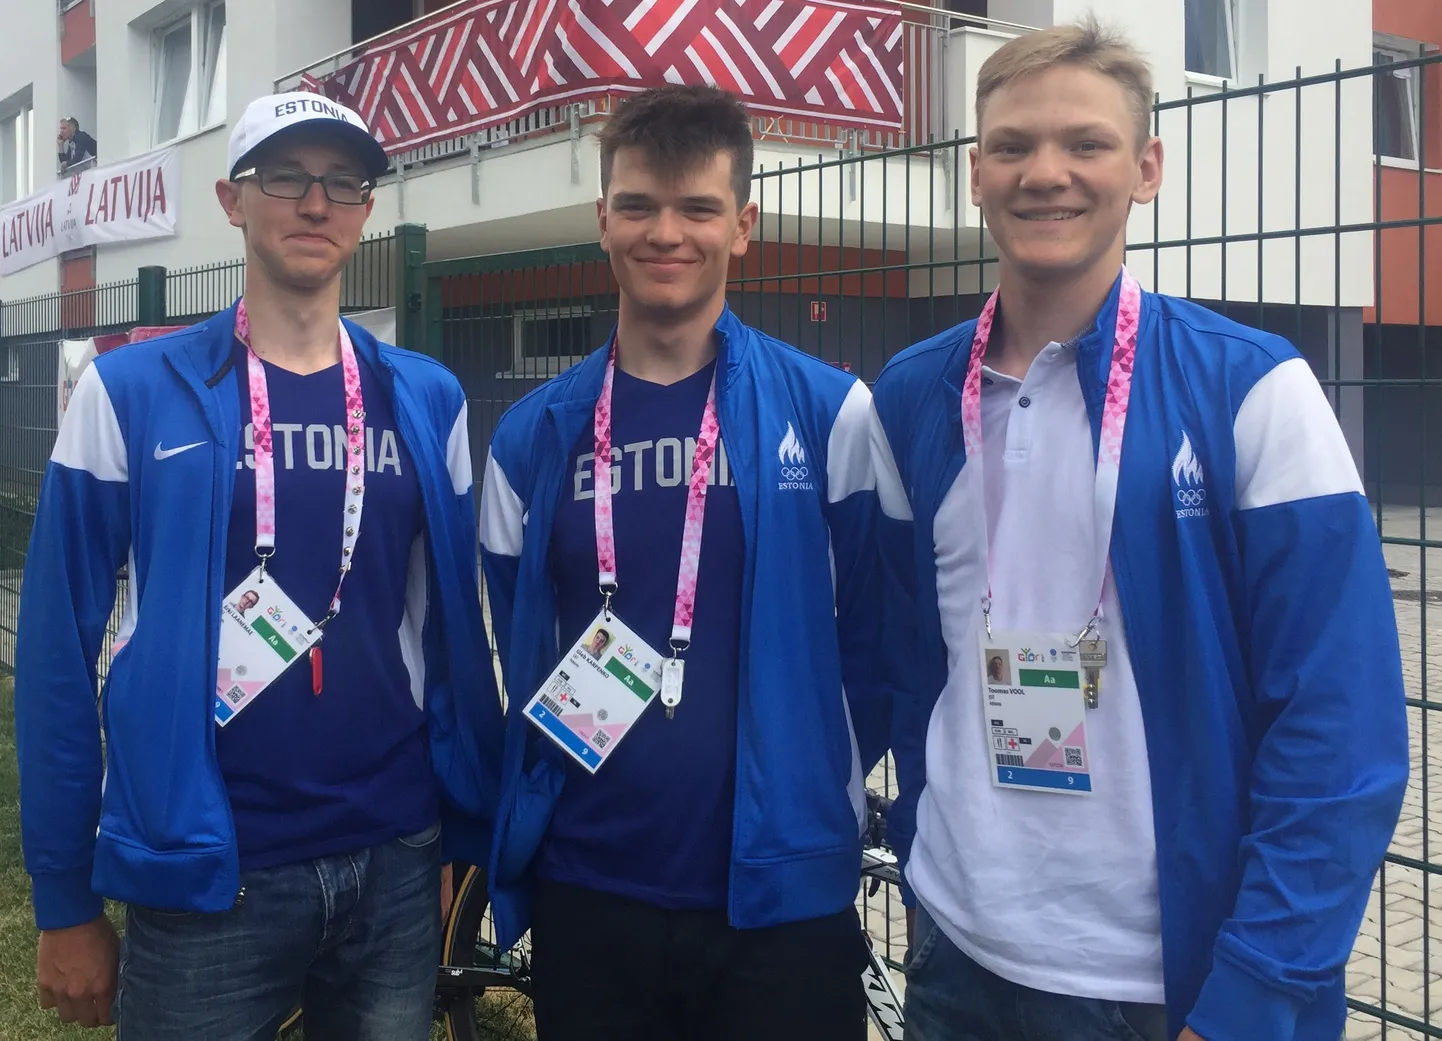 Eesti jalgrattakoondise vormis sõidavad noorte olümpiafestivalil Viljandi noormehed Erki Laanemäe (vasakul) ja Toomas Vool (paremal) ning narvalane Gleb Karpenko.